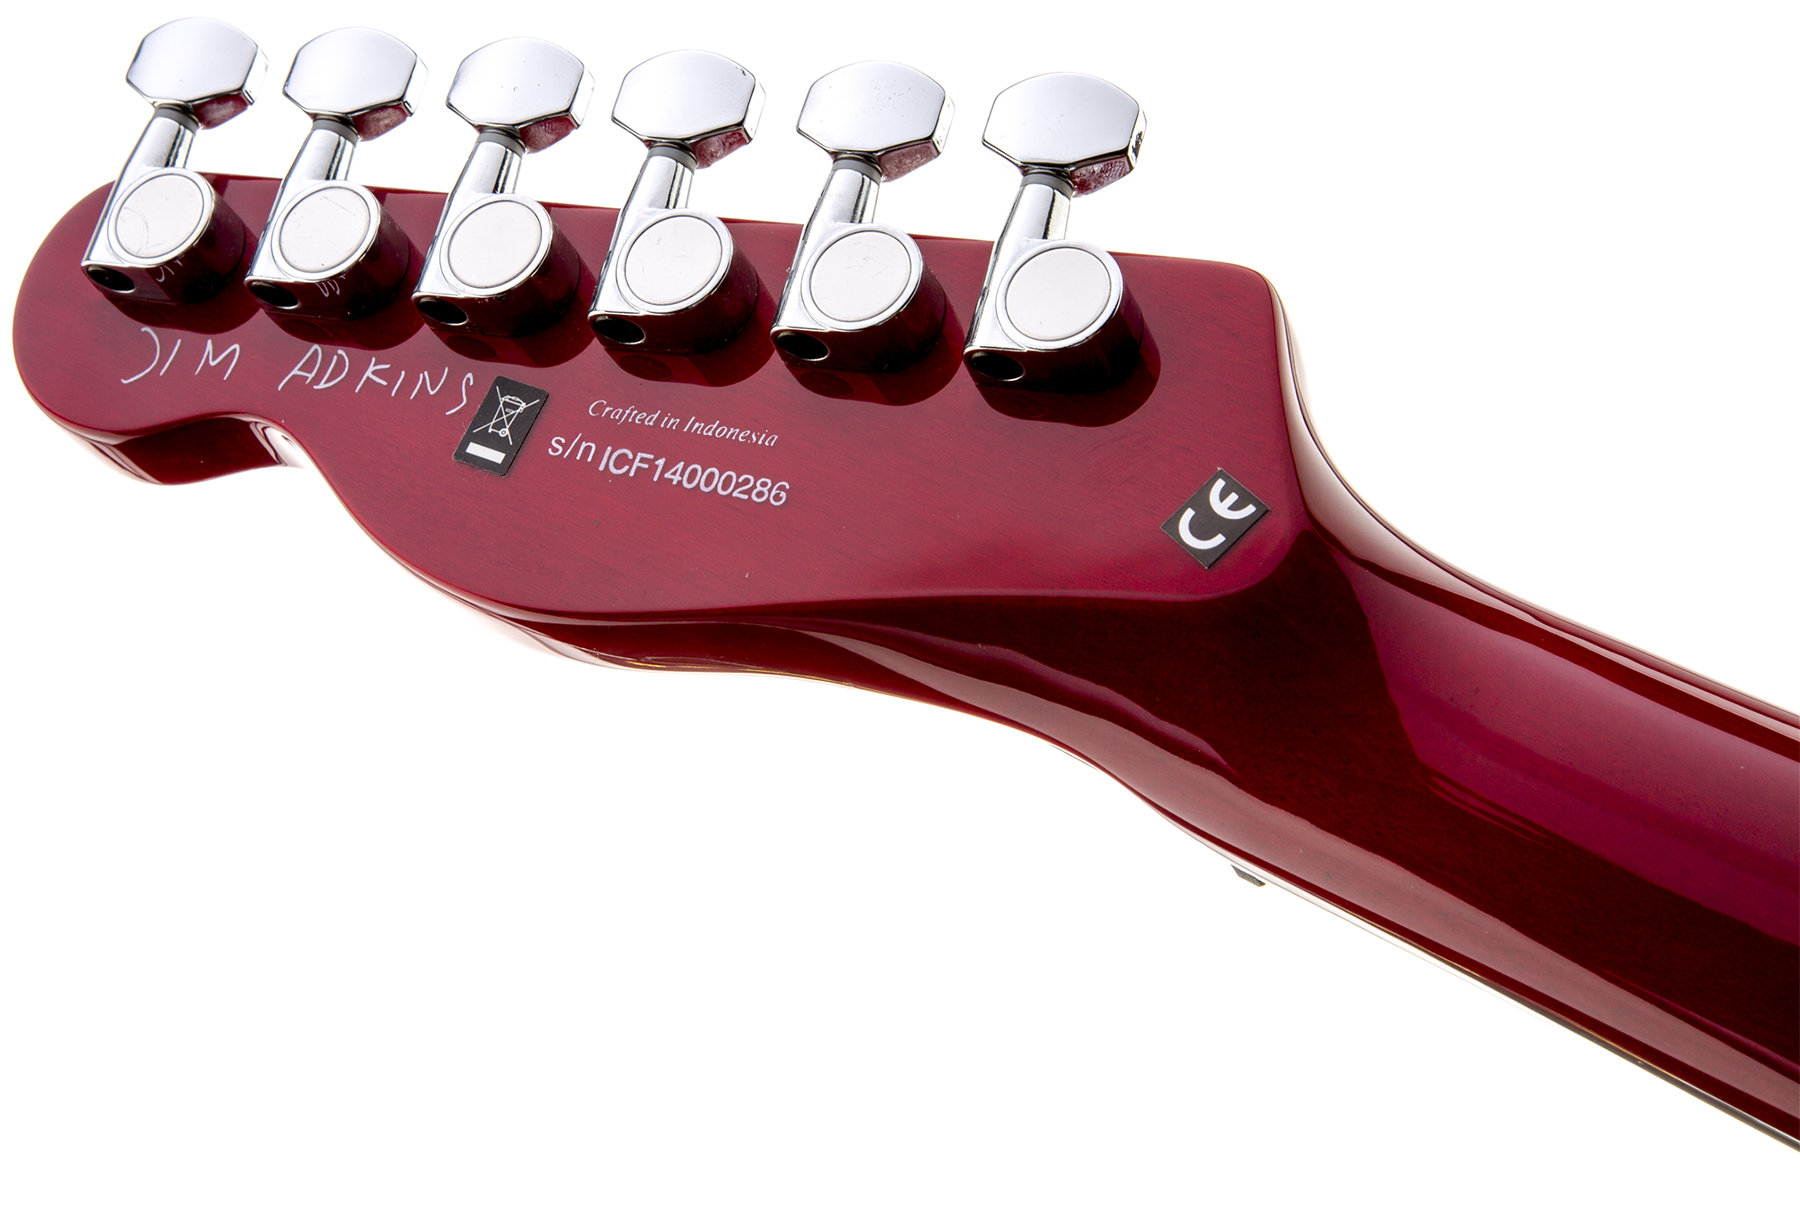 Fender Jim Adkins Tele Ja-90 Mex Signature 2p90 Lau - Crimson Red Transparent - Guitarra eléctrica con forma de tel - Variation 3